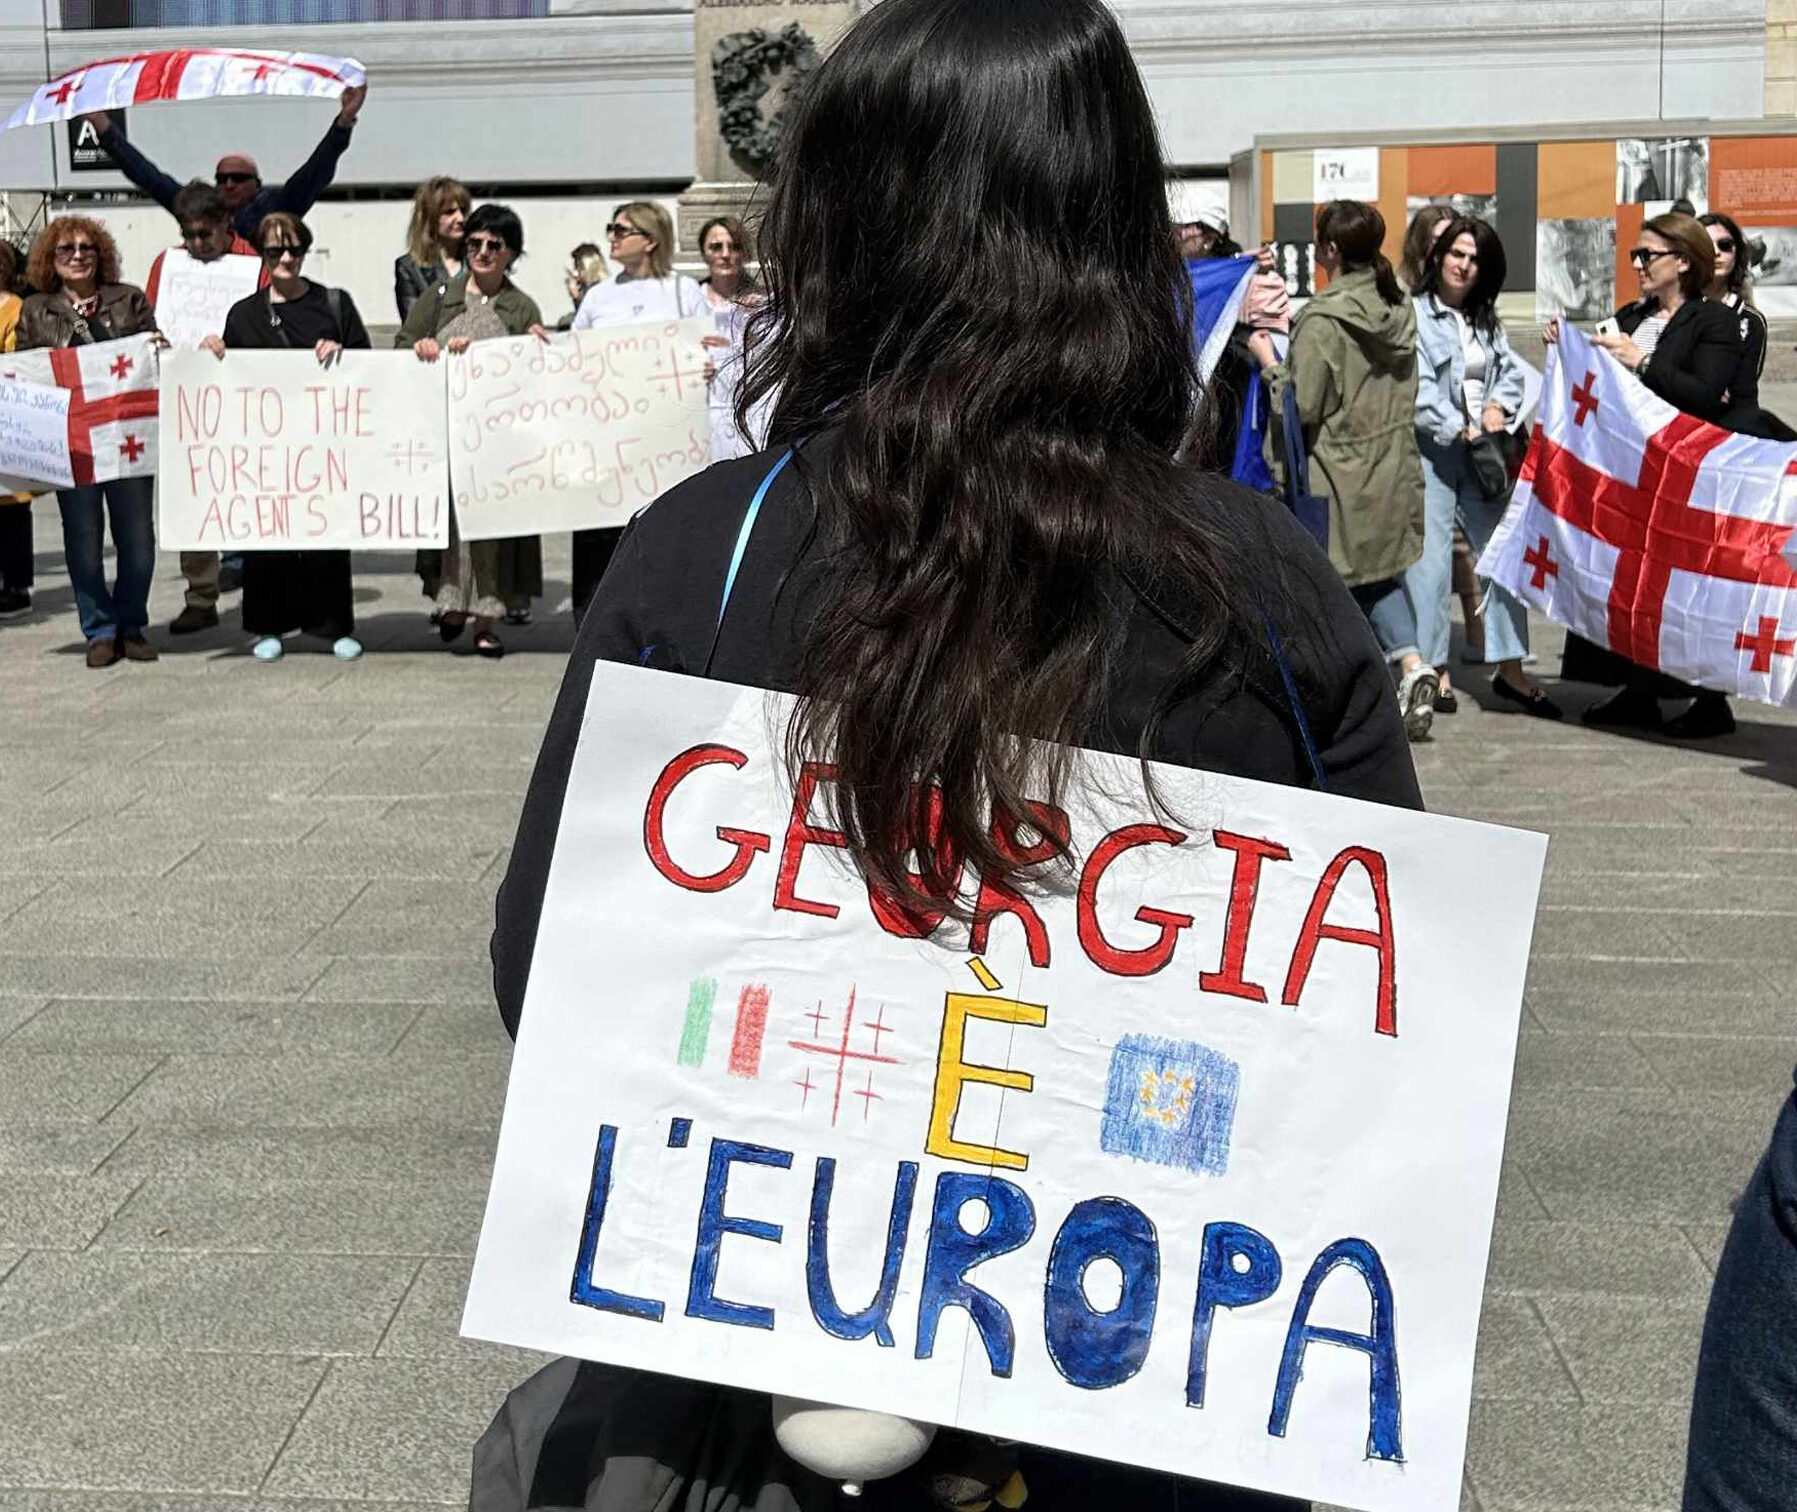 439264001 871807678317171 3561344180928552545 n e1714921748248 новости акция протеста, грузинские эмигранты, закон об иноагентах в грузии, Милан